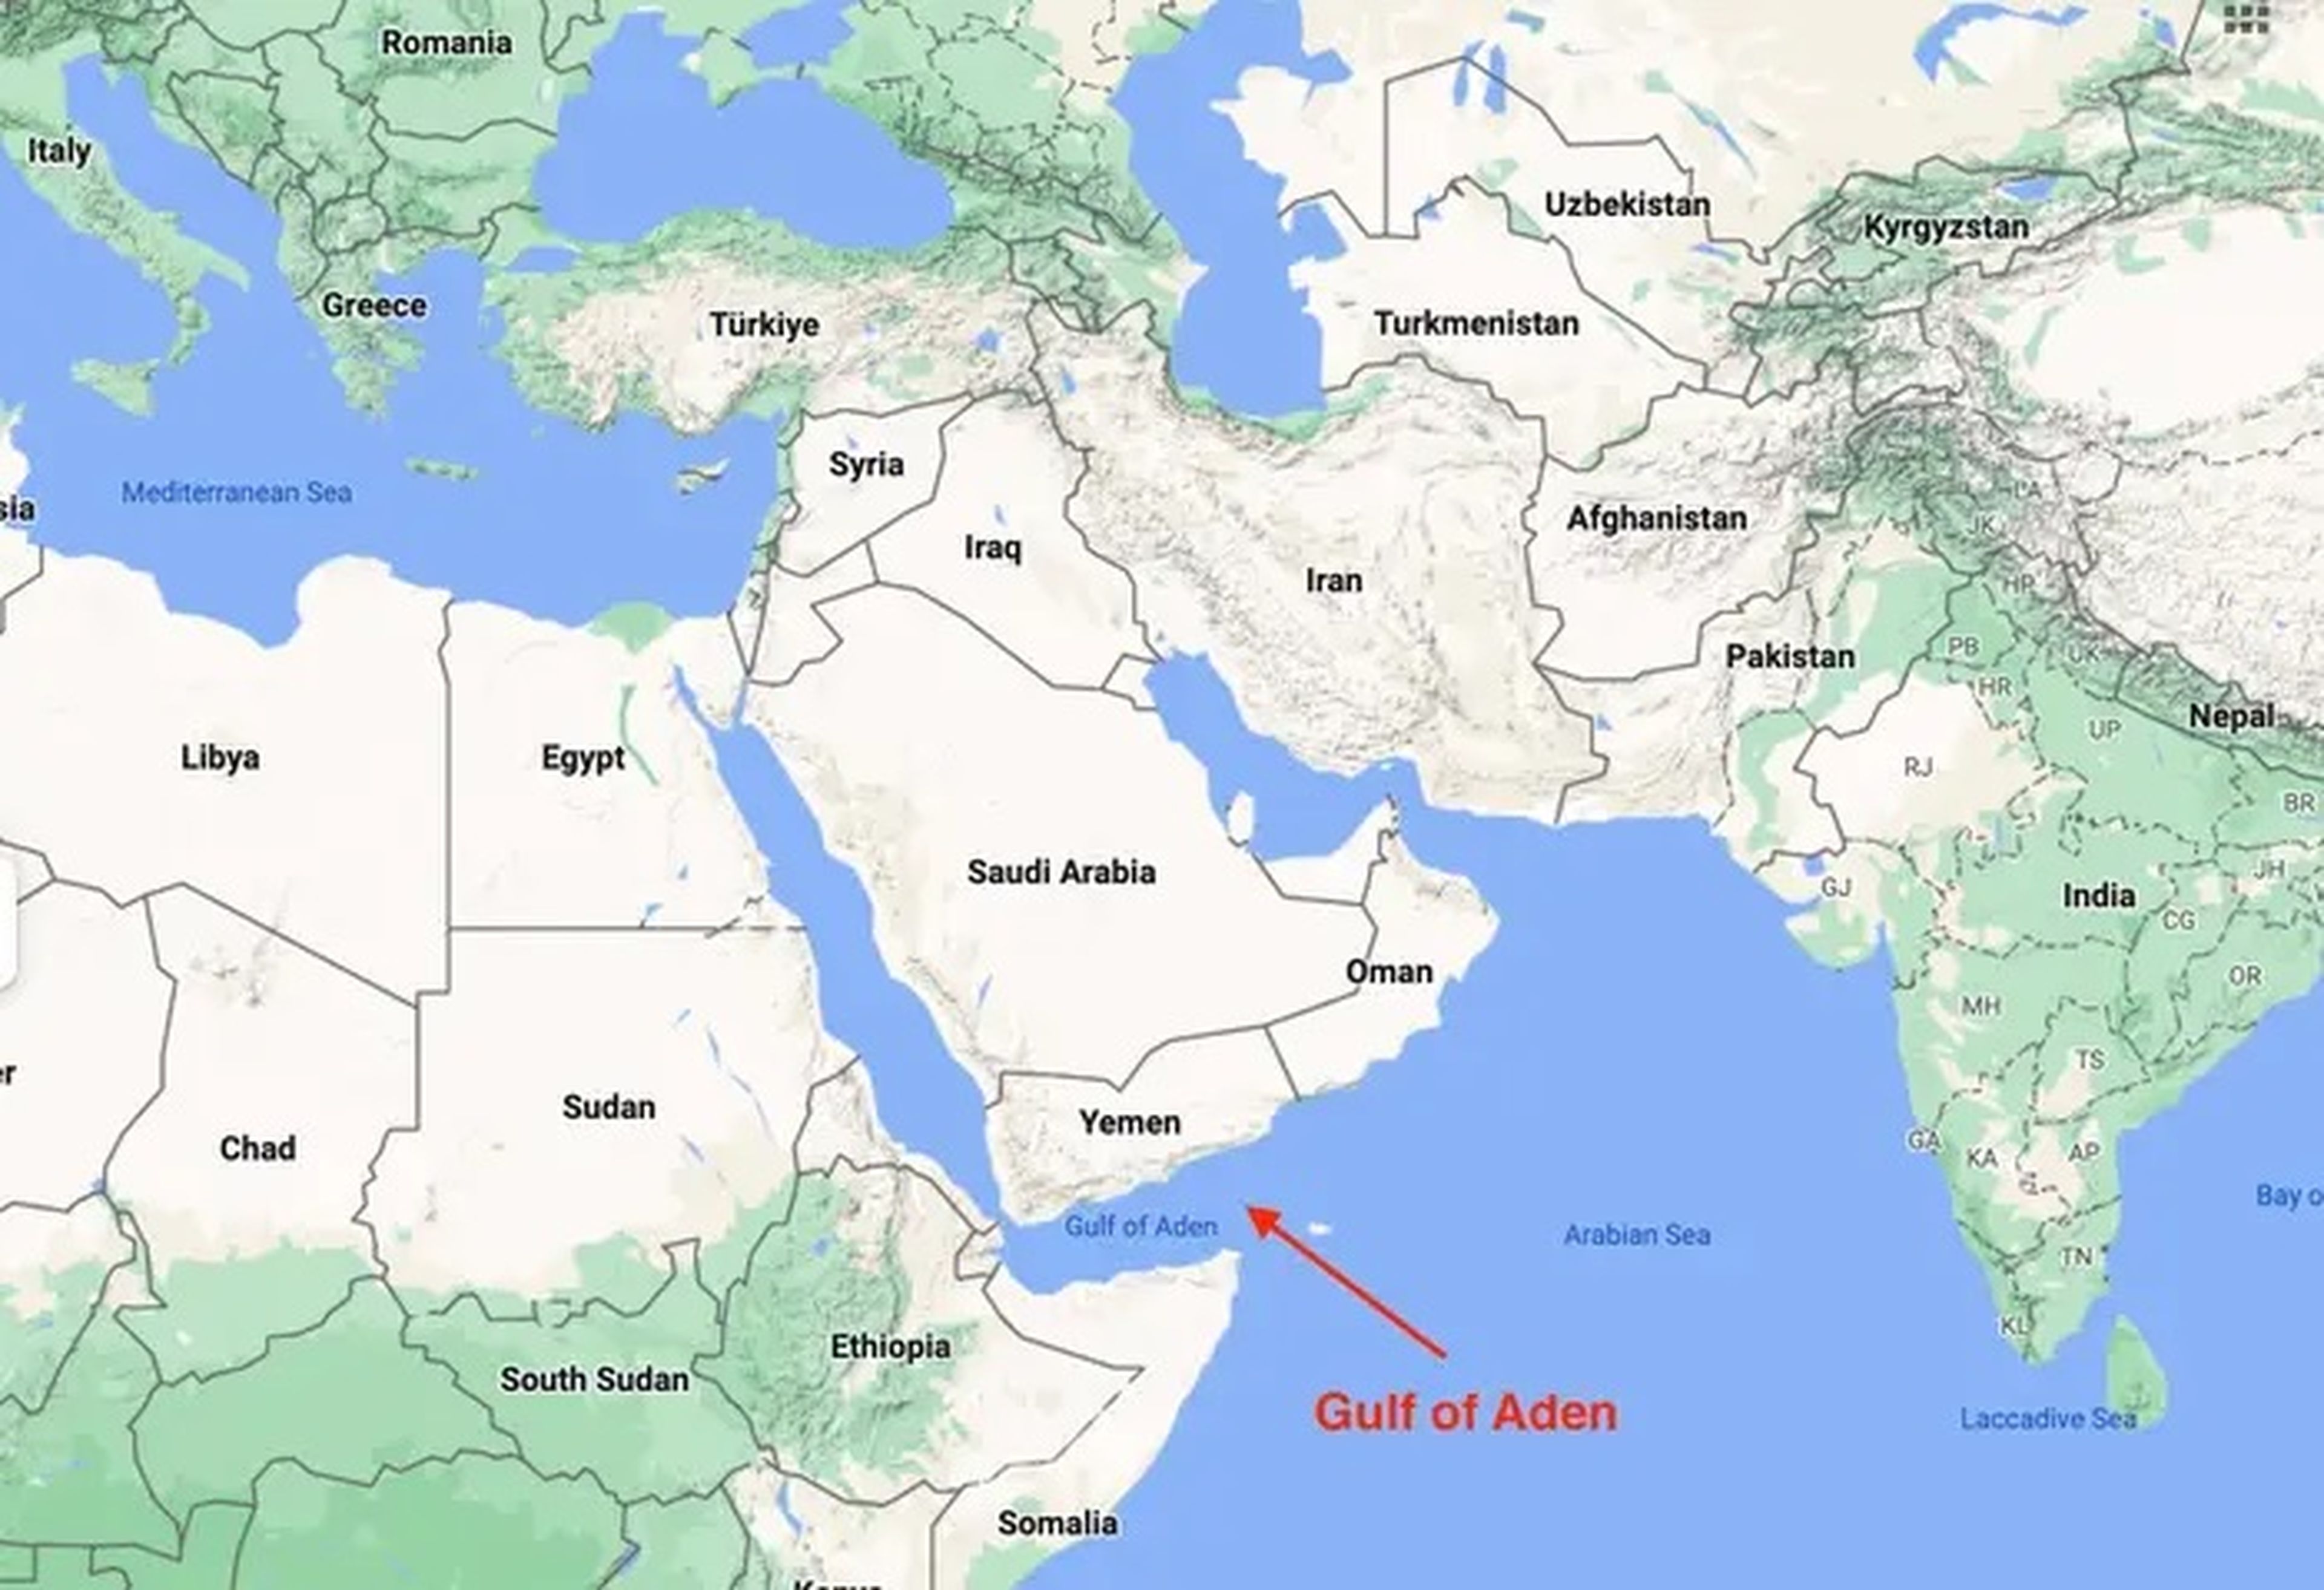 El Golfo de Adén es una de las rutas marítimas más transitadas del mundo y conecta Asia con Oriente Medio y Europa. En 2010 también fue un notorio foco de piratas somalíes.